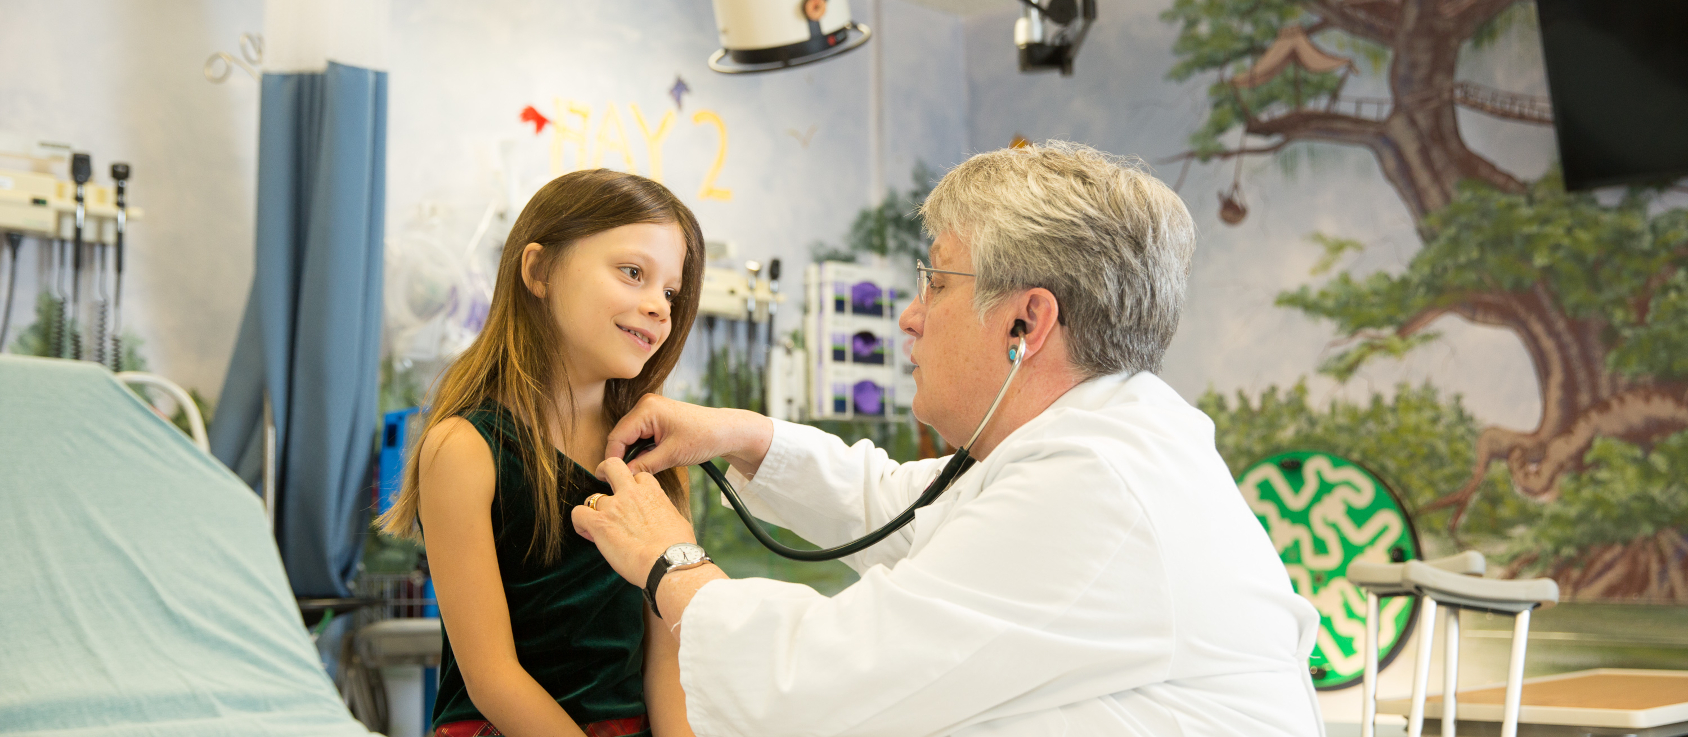 Детский врач осматривает пациента с помощью стетоскопа